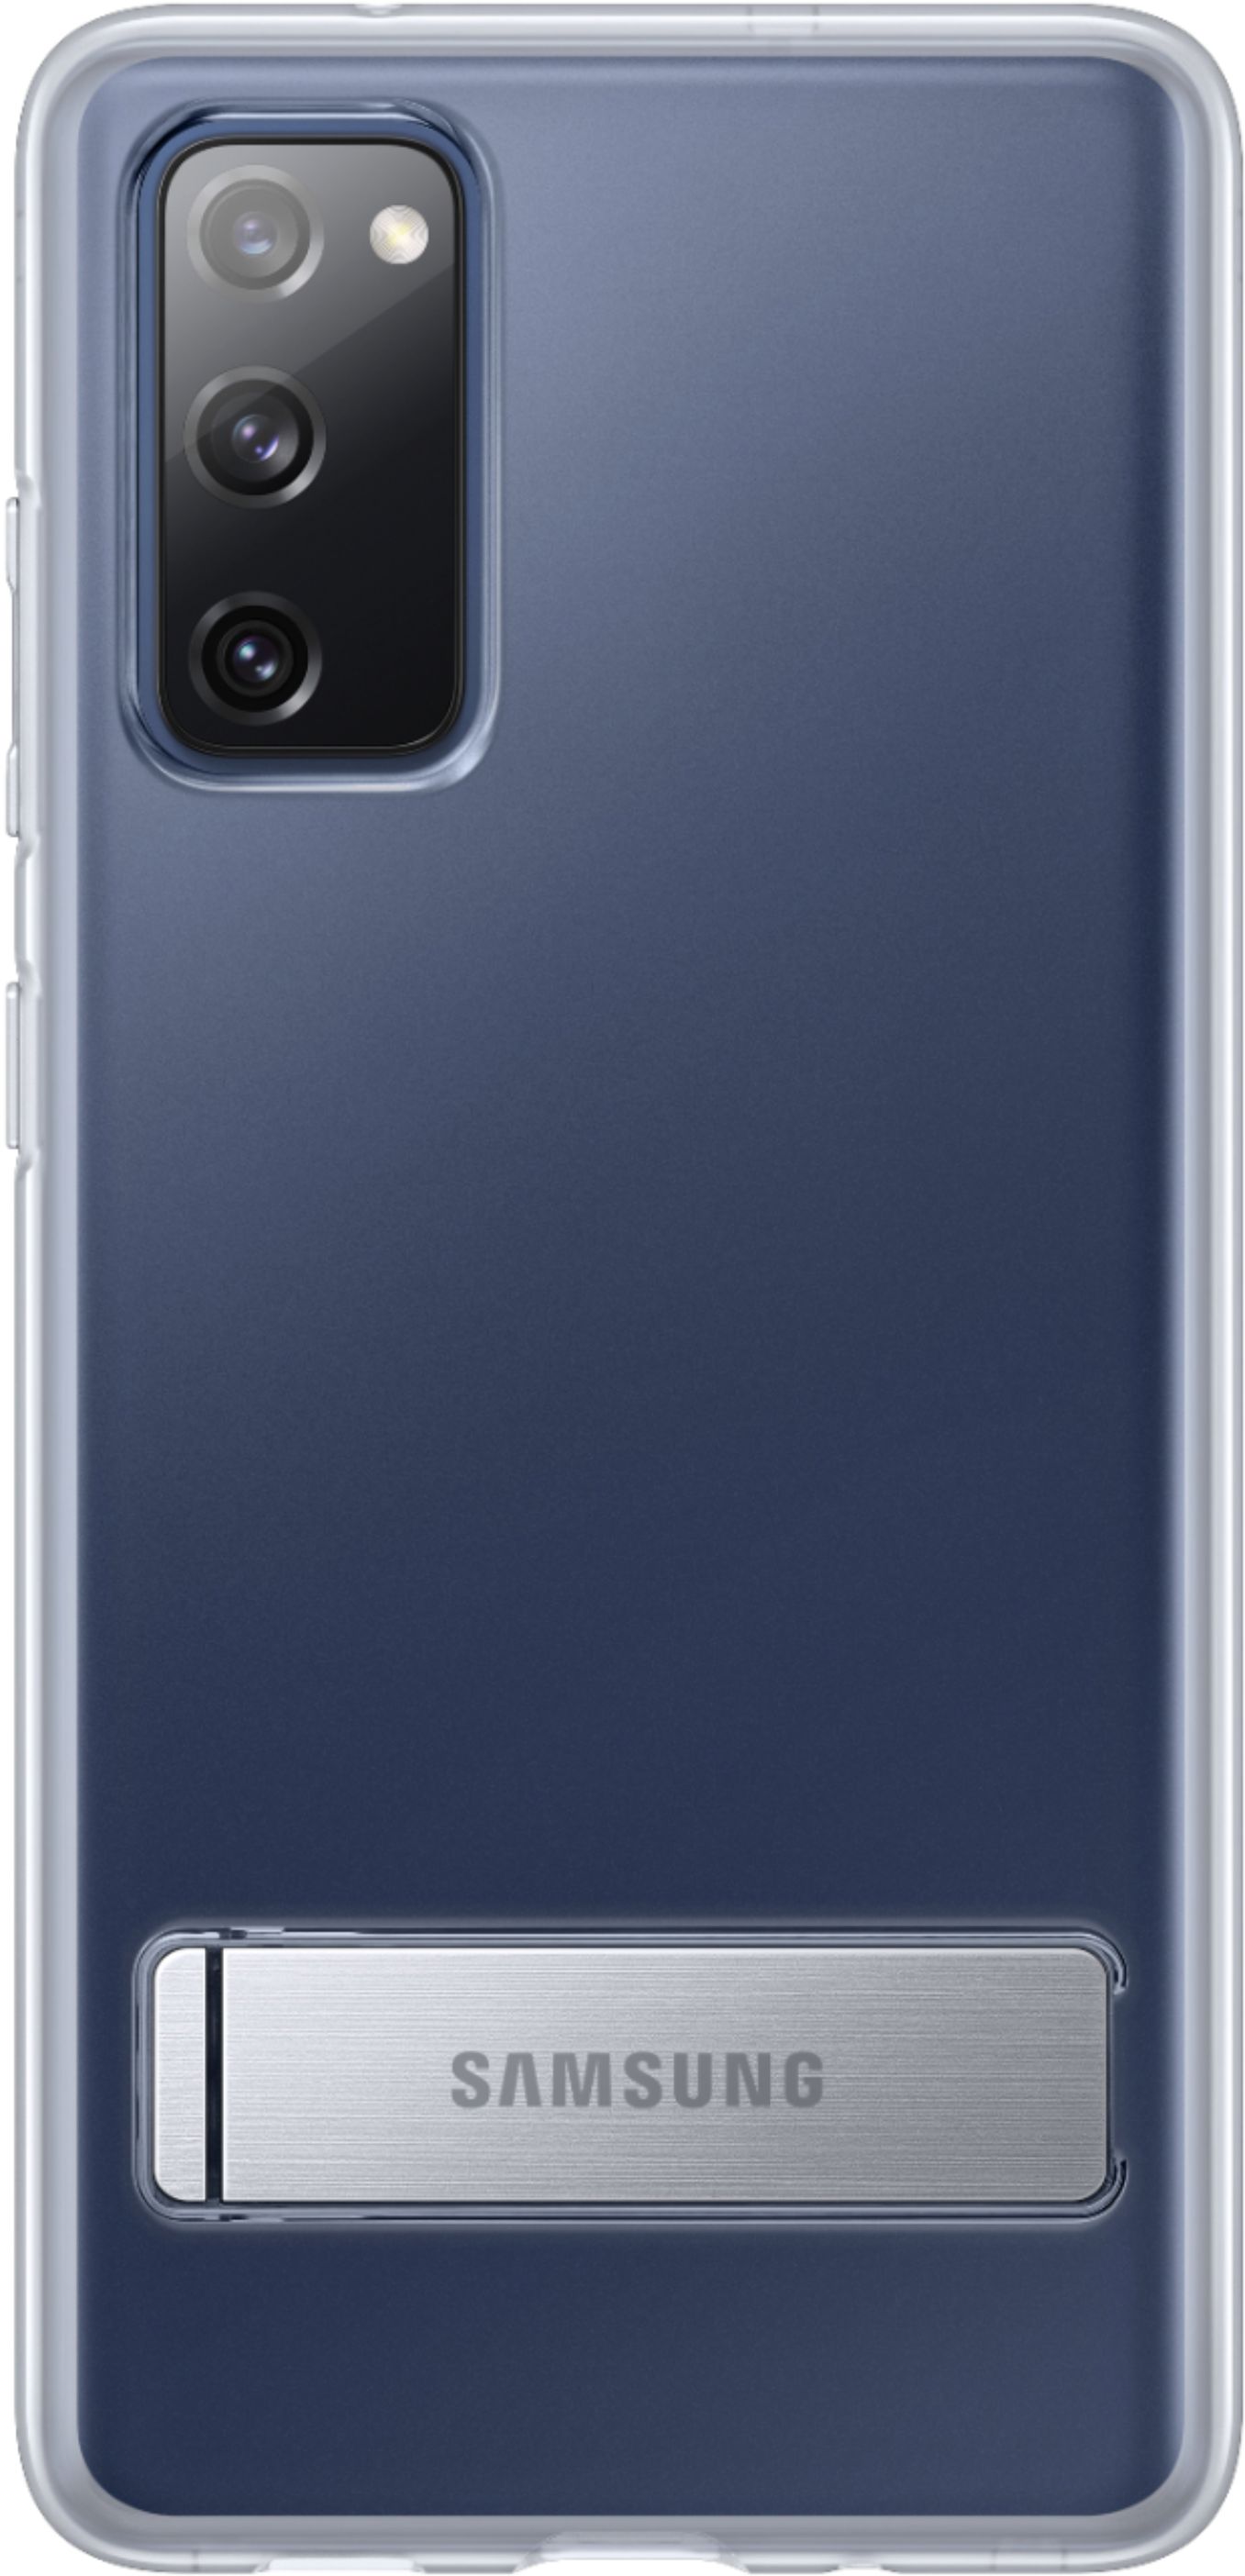 FULLYIDEA Back Cover for Samsung Galaxy S20 Fe, supreme lv - FULLYIDEA 